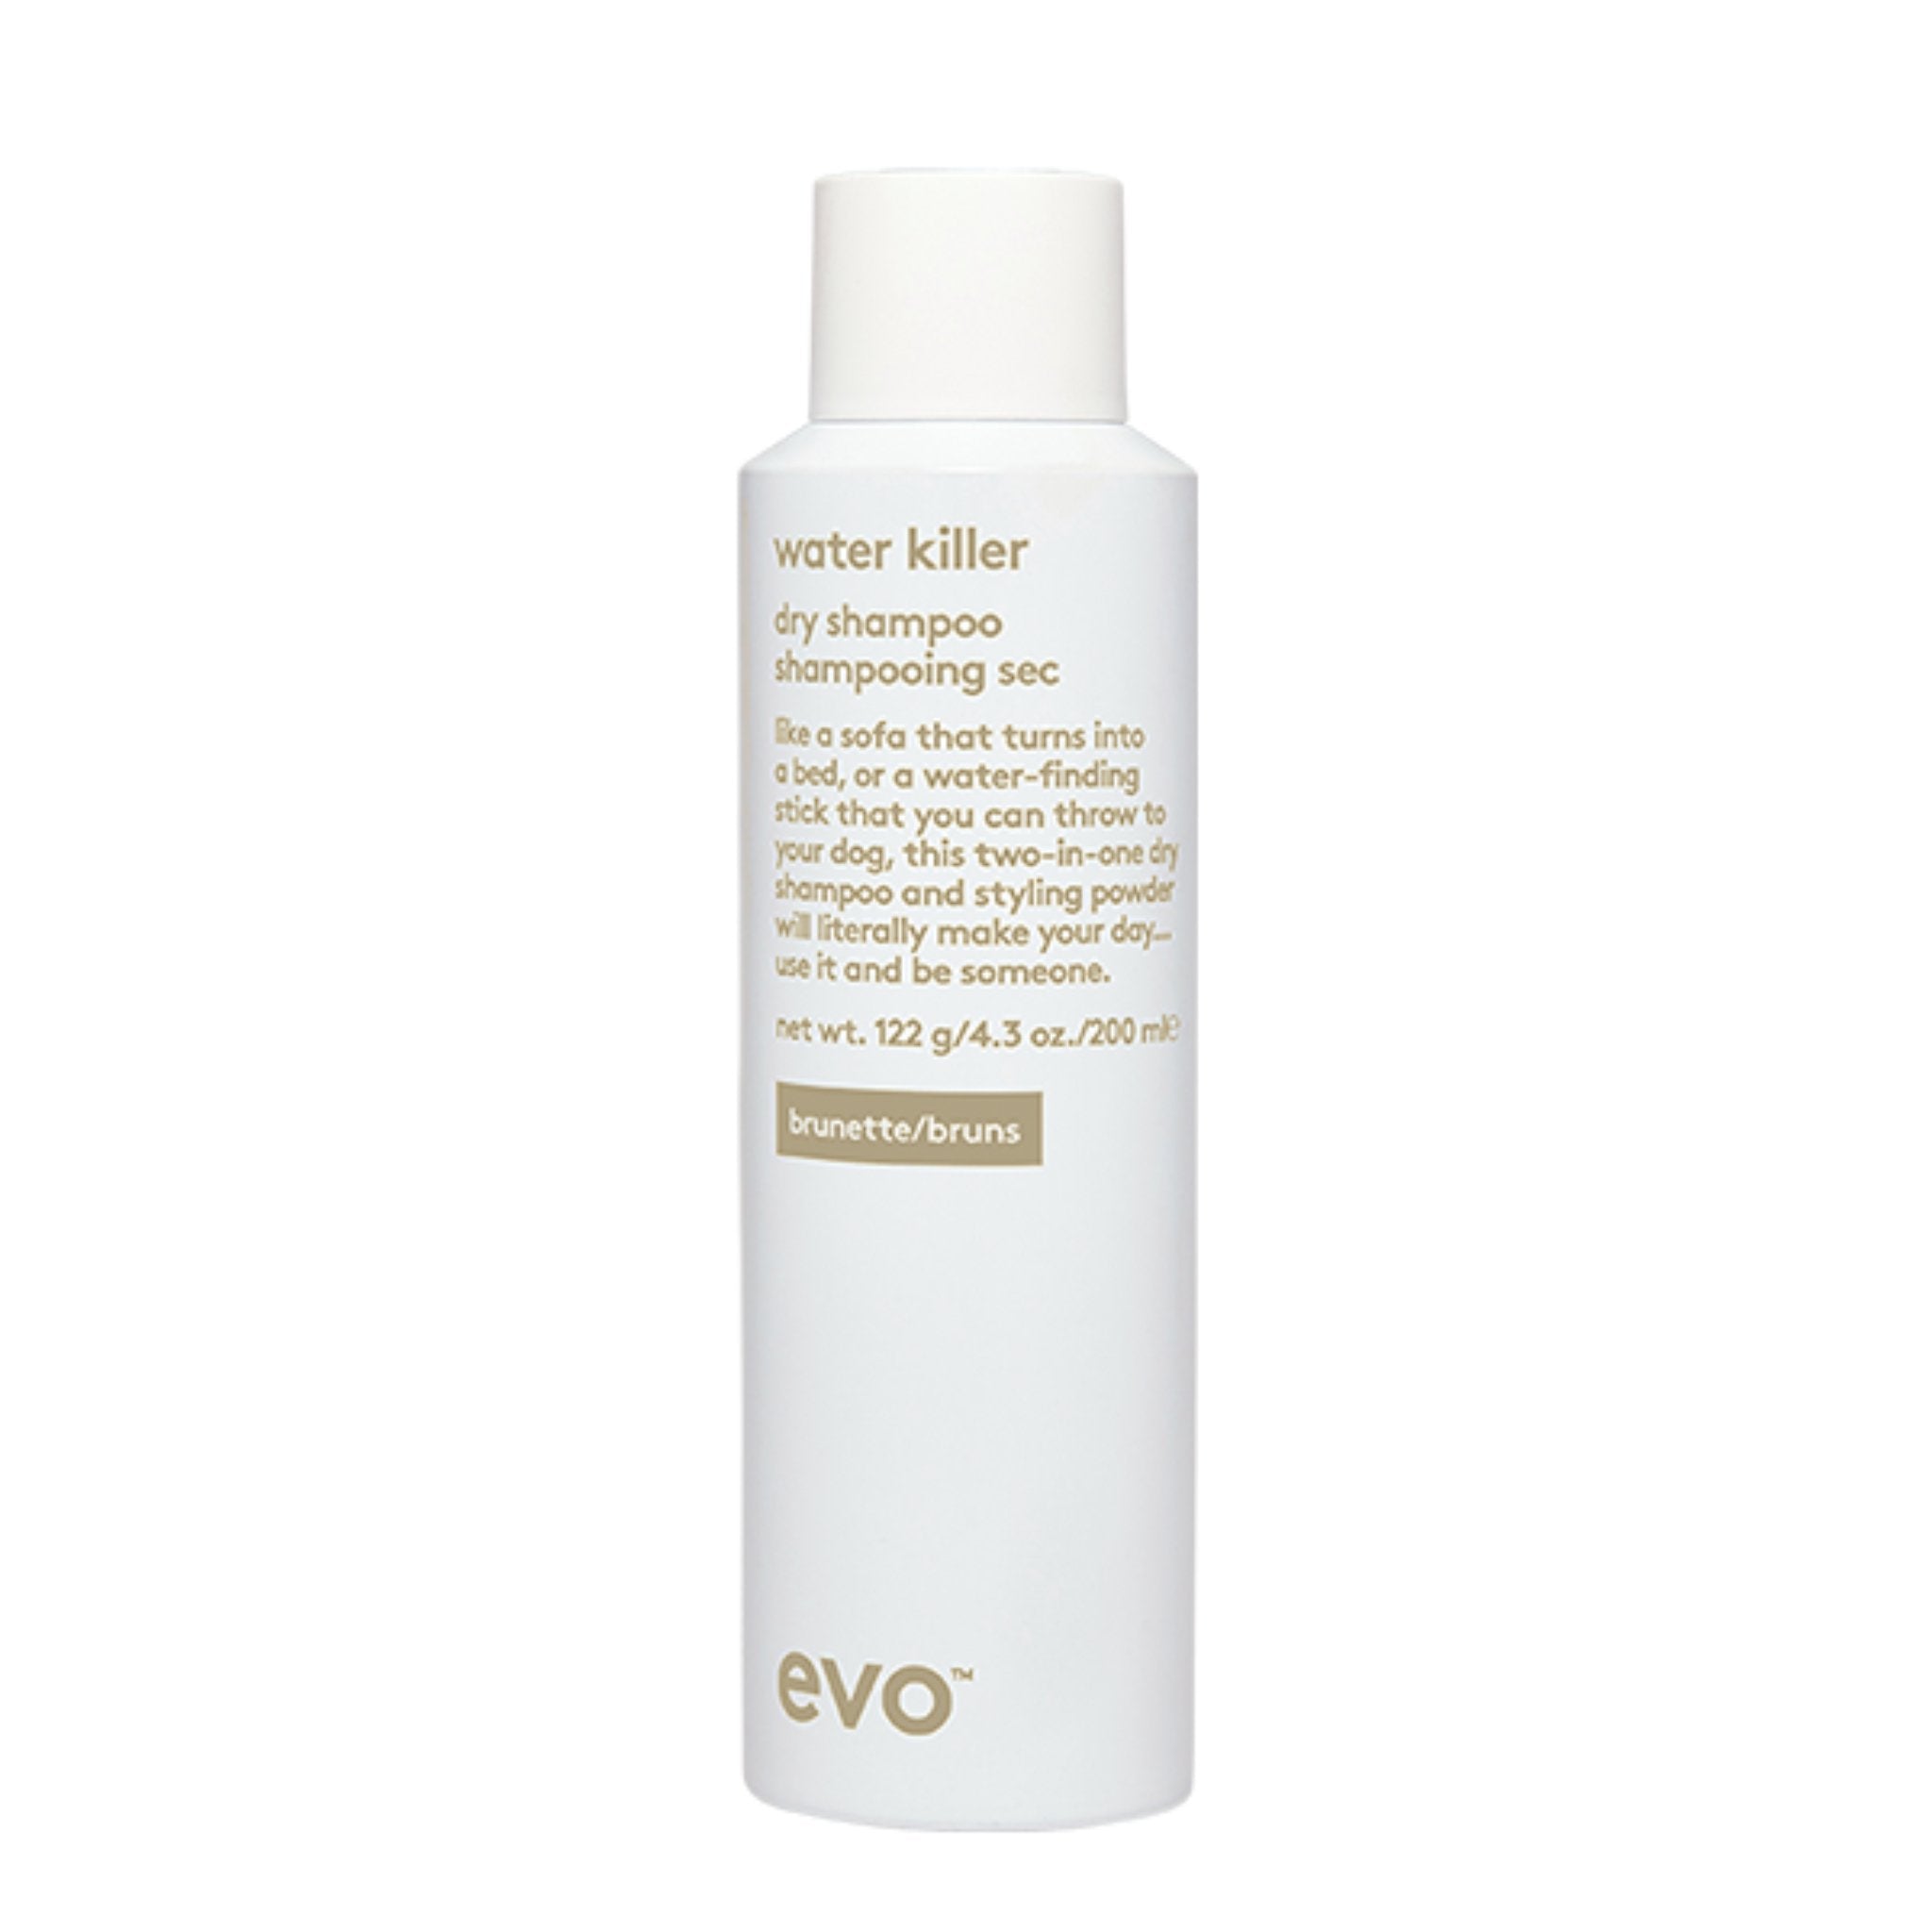 Evo. Water Killer Shampoing Sec Brunette - 200 ml - Concept C. Shop